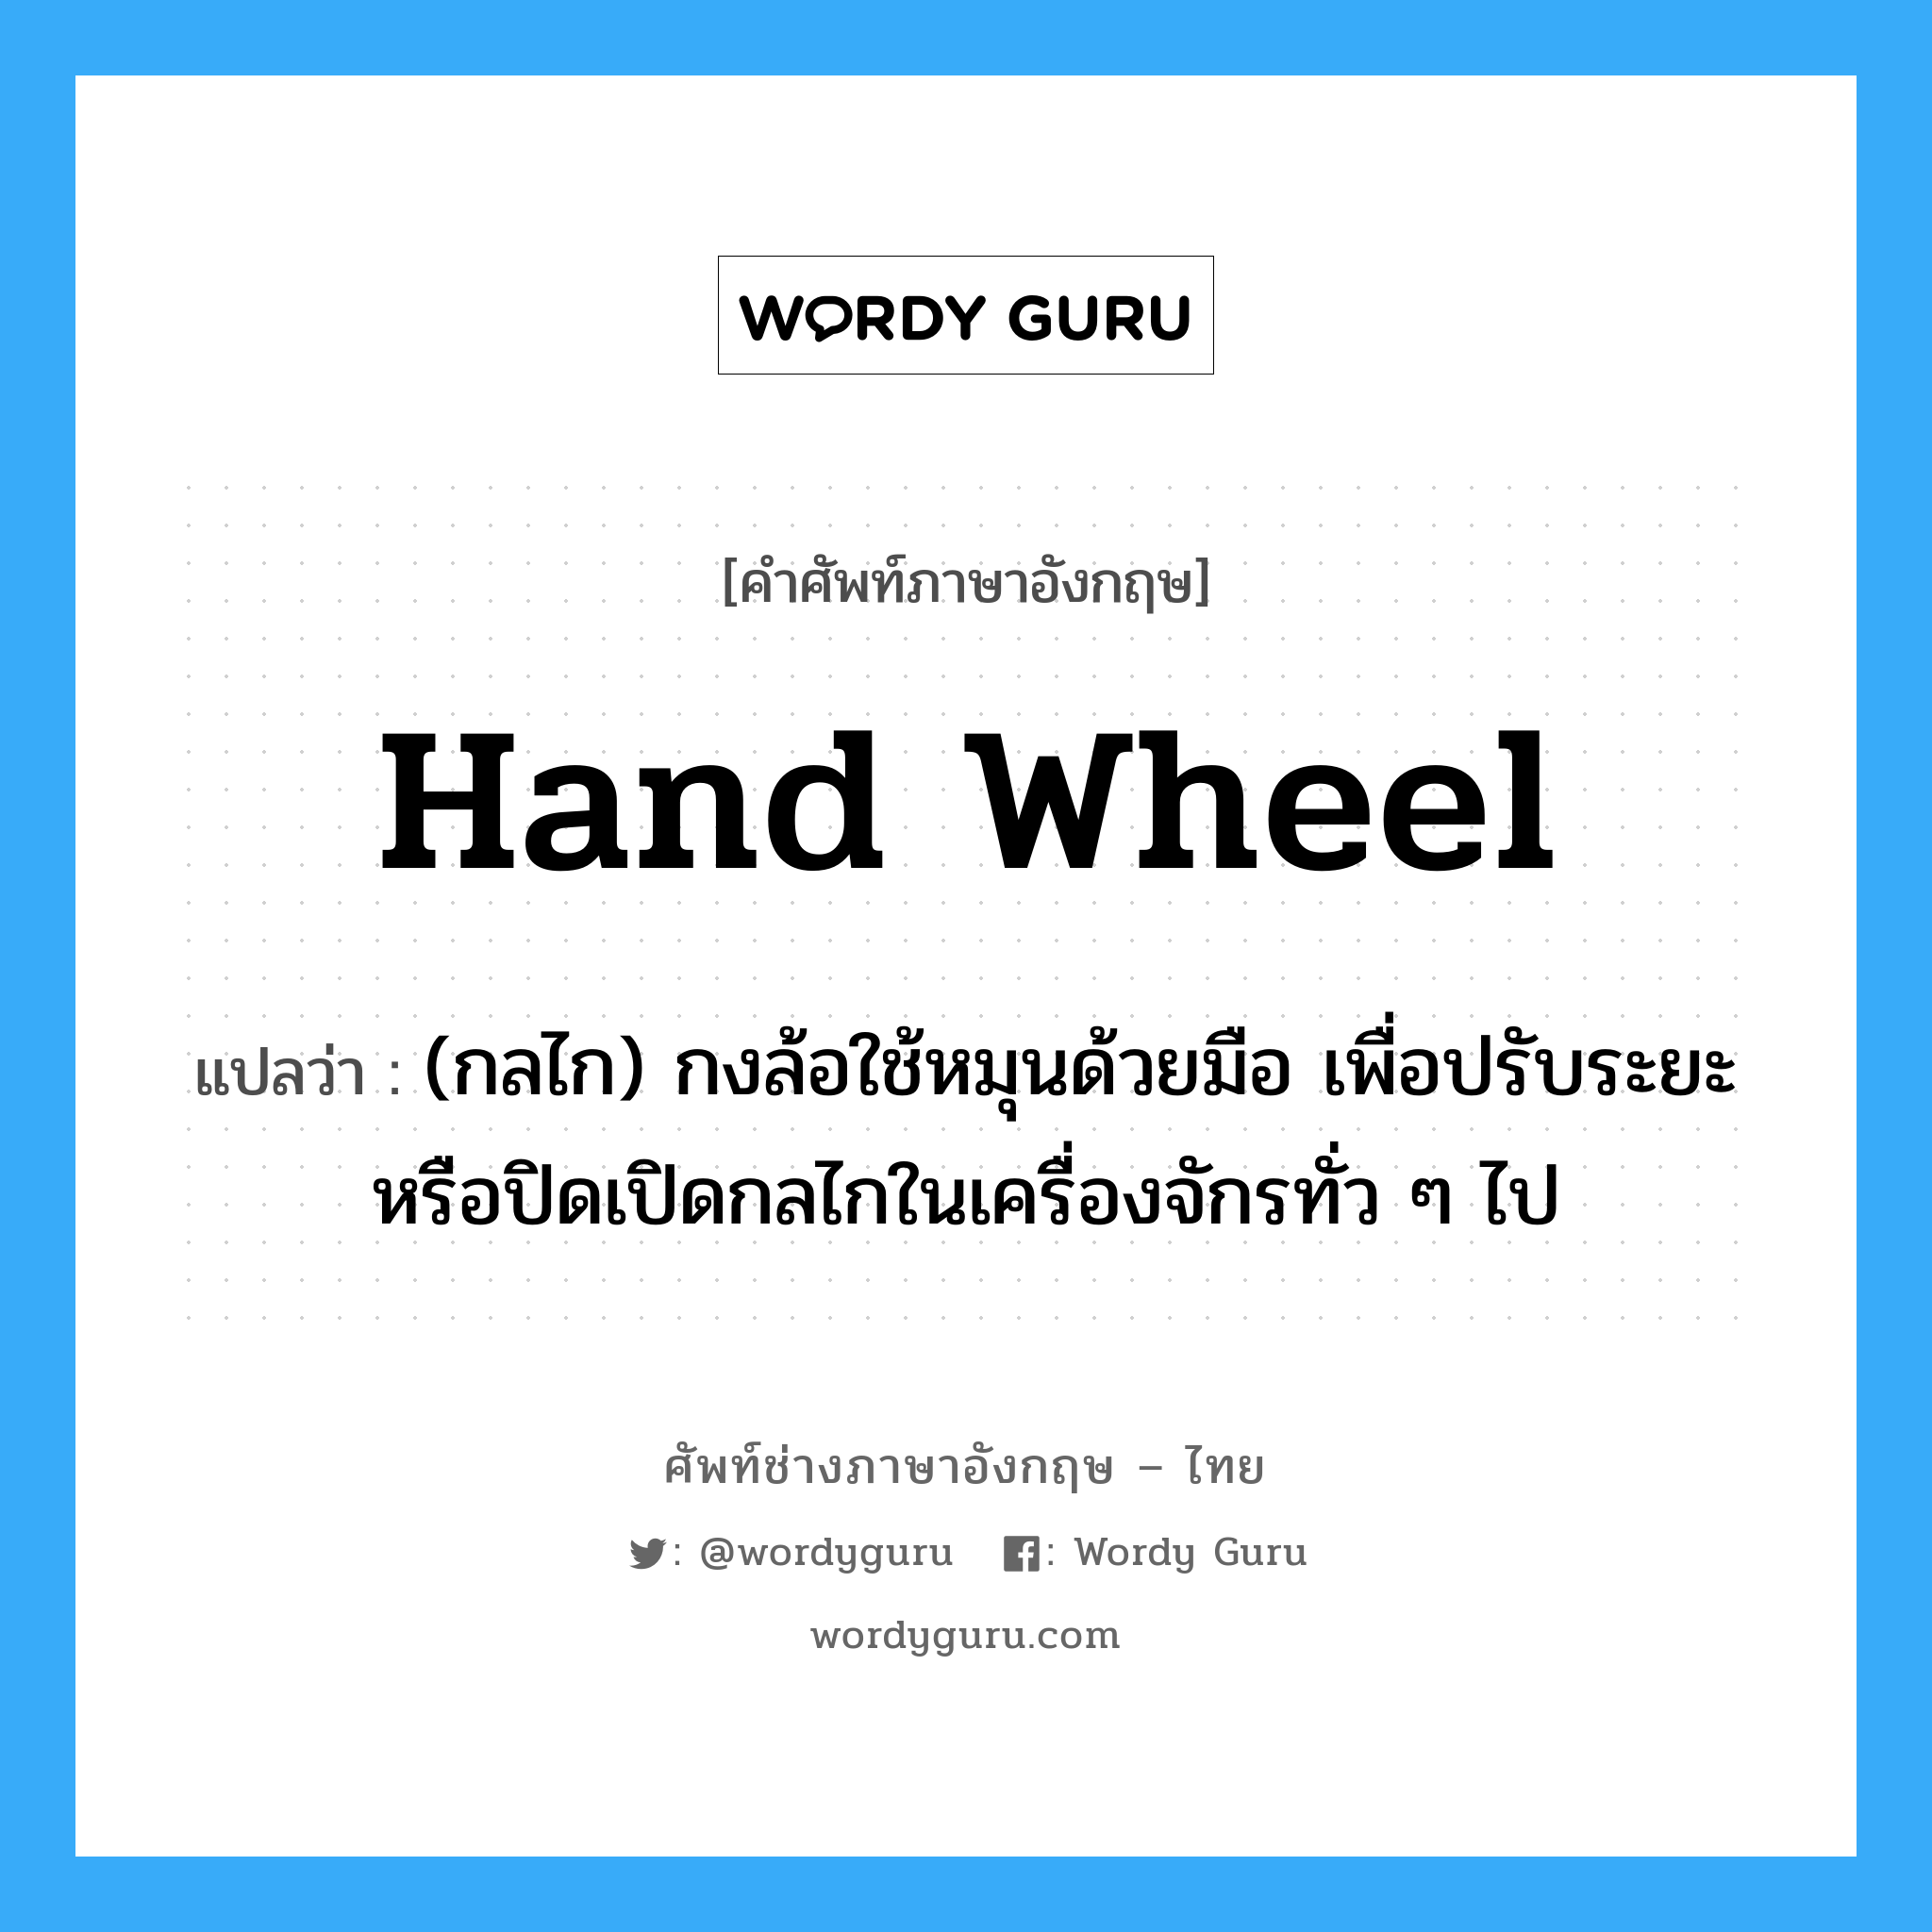 hand wheel แปลว่า?, คำศัพท์ช่างภาษาอังกฤษ - ไทย hand wheel คำศัพท์ภาษาอังกฤษ hand wheel แปลว่า (กลไก) กงล้อใช้หมุนด้วยมือ เพื่อปรับระยะ หรือปิดเปิดกลไกในเครื่องจักรทั่ว ๆ ไป